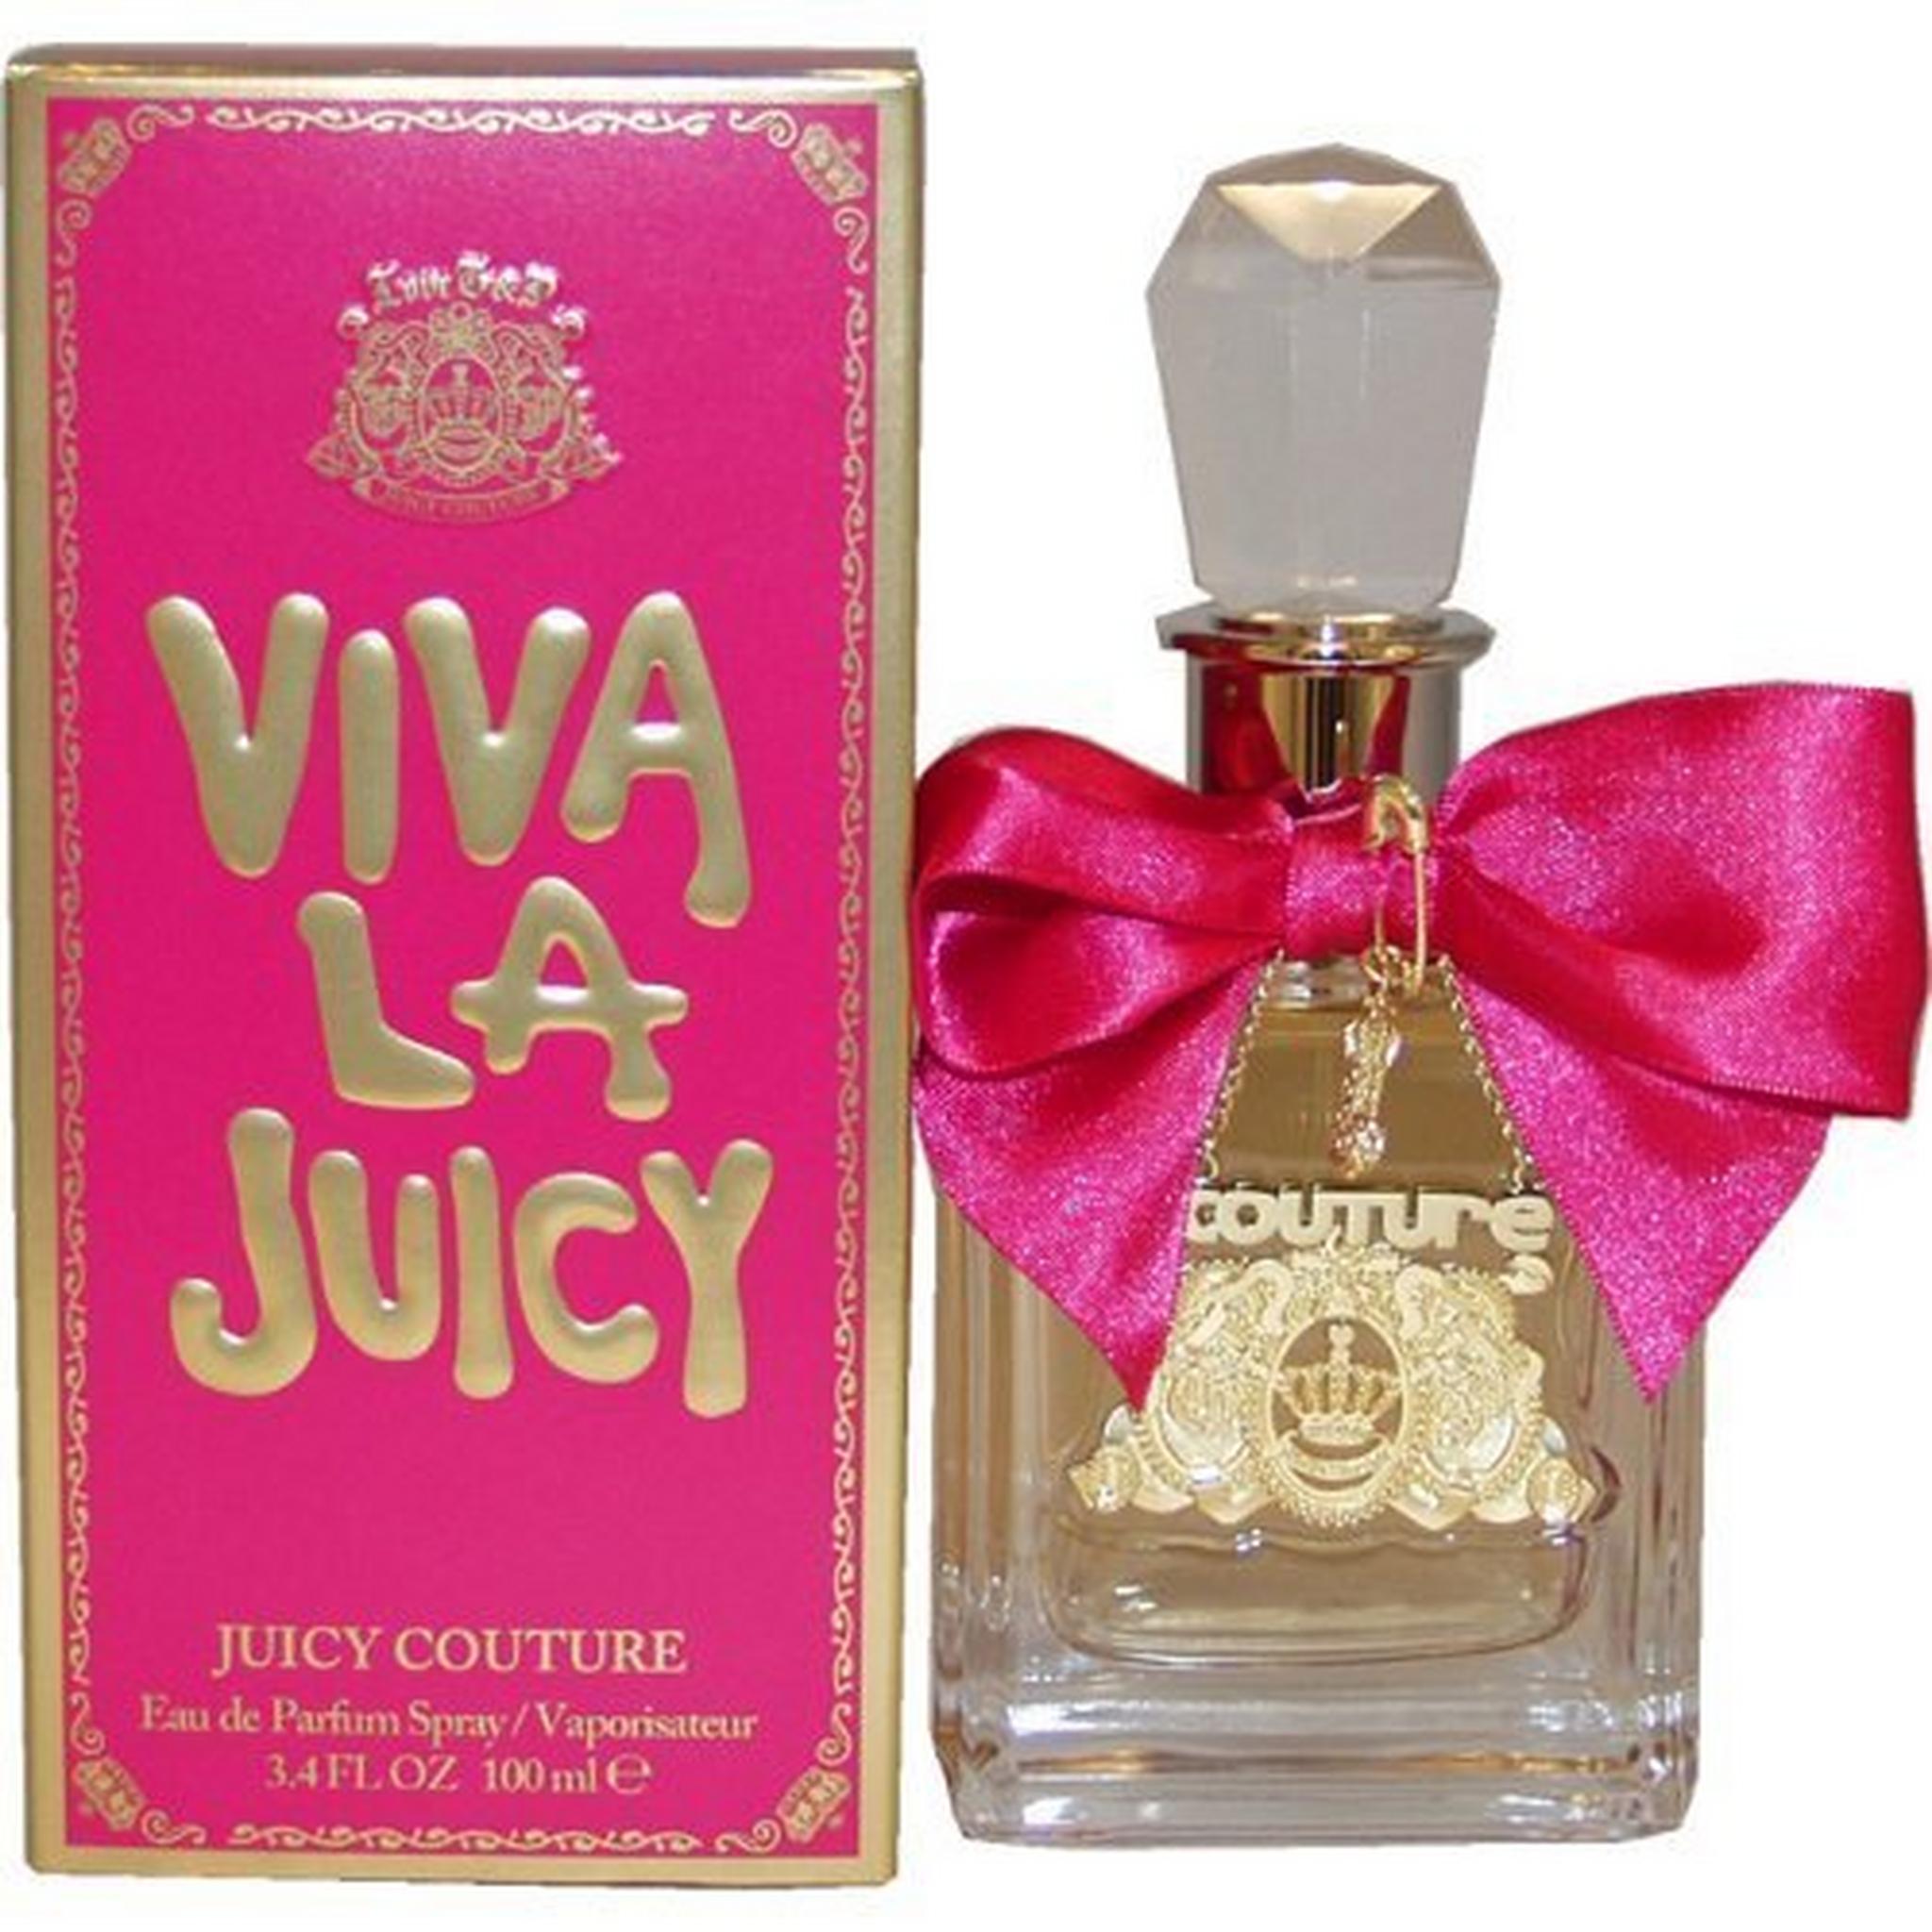 Viva la Juicy by Juicy couture for Women 100 mL Eau de Parfum